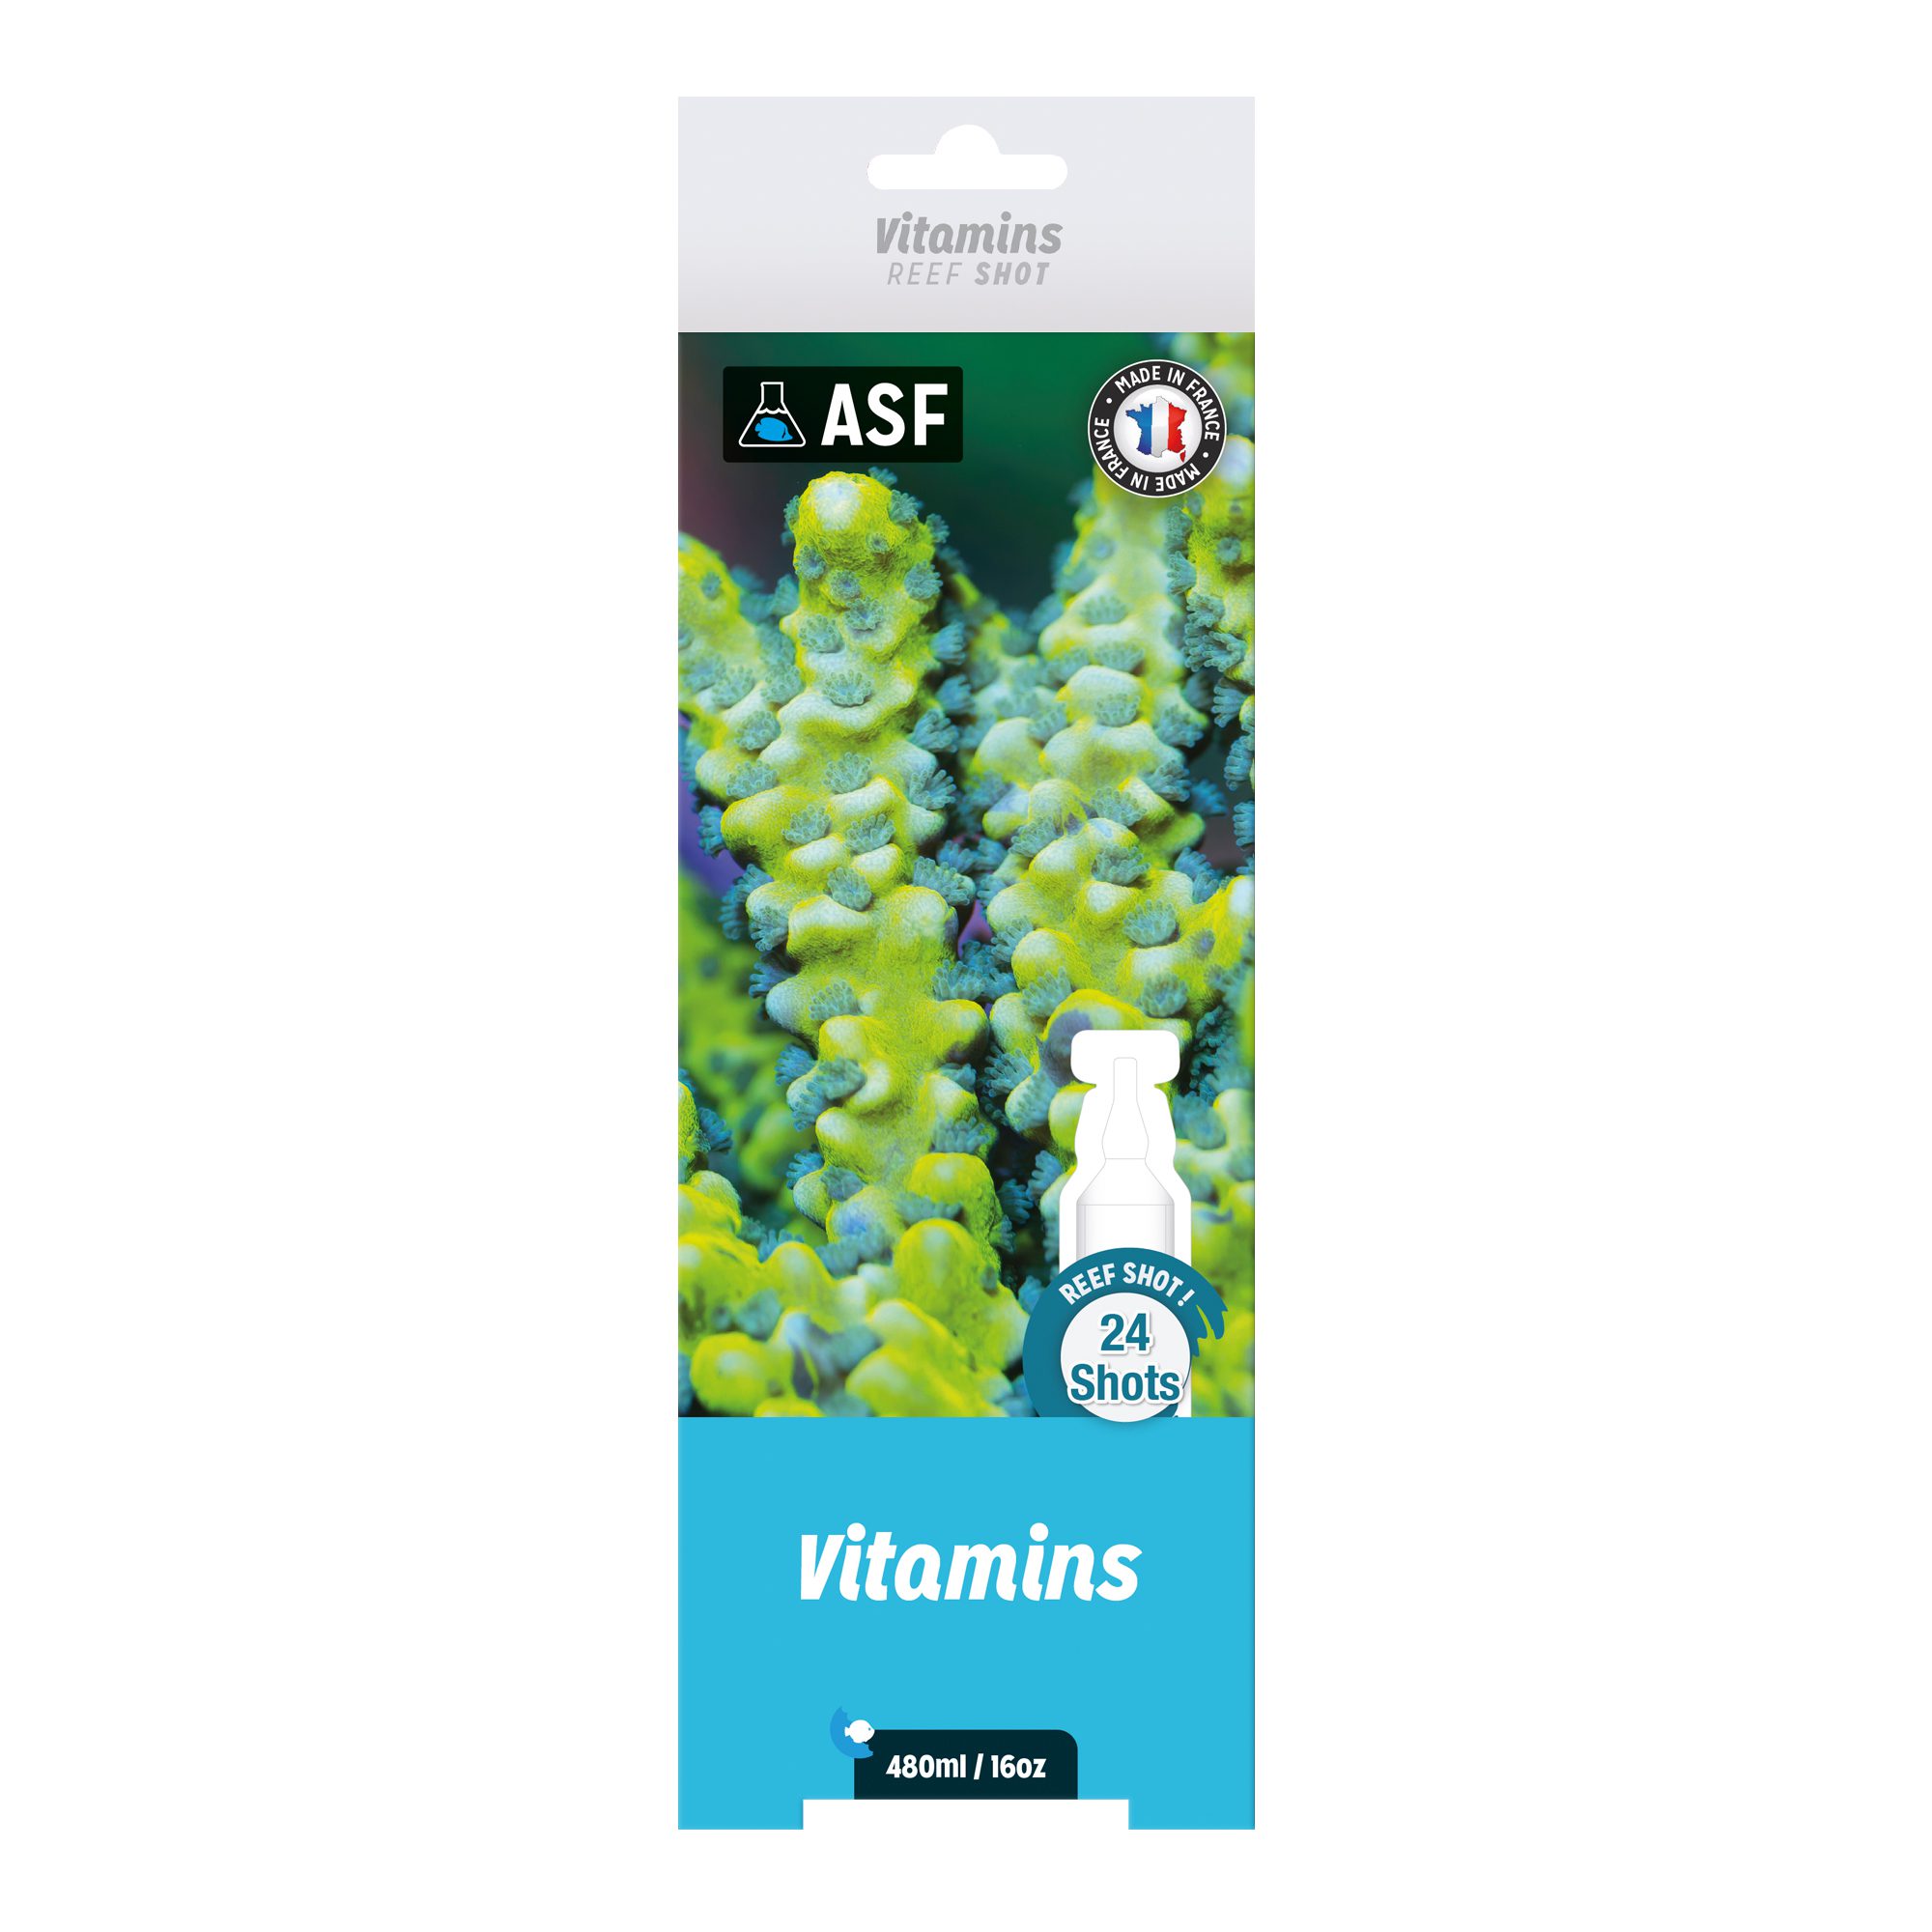 AS Vitamins Reef Shots 24 pack 480ml